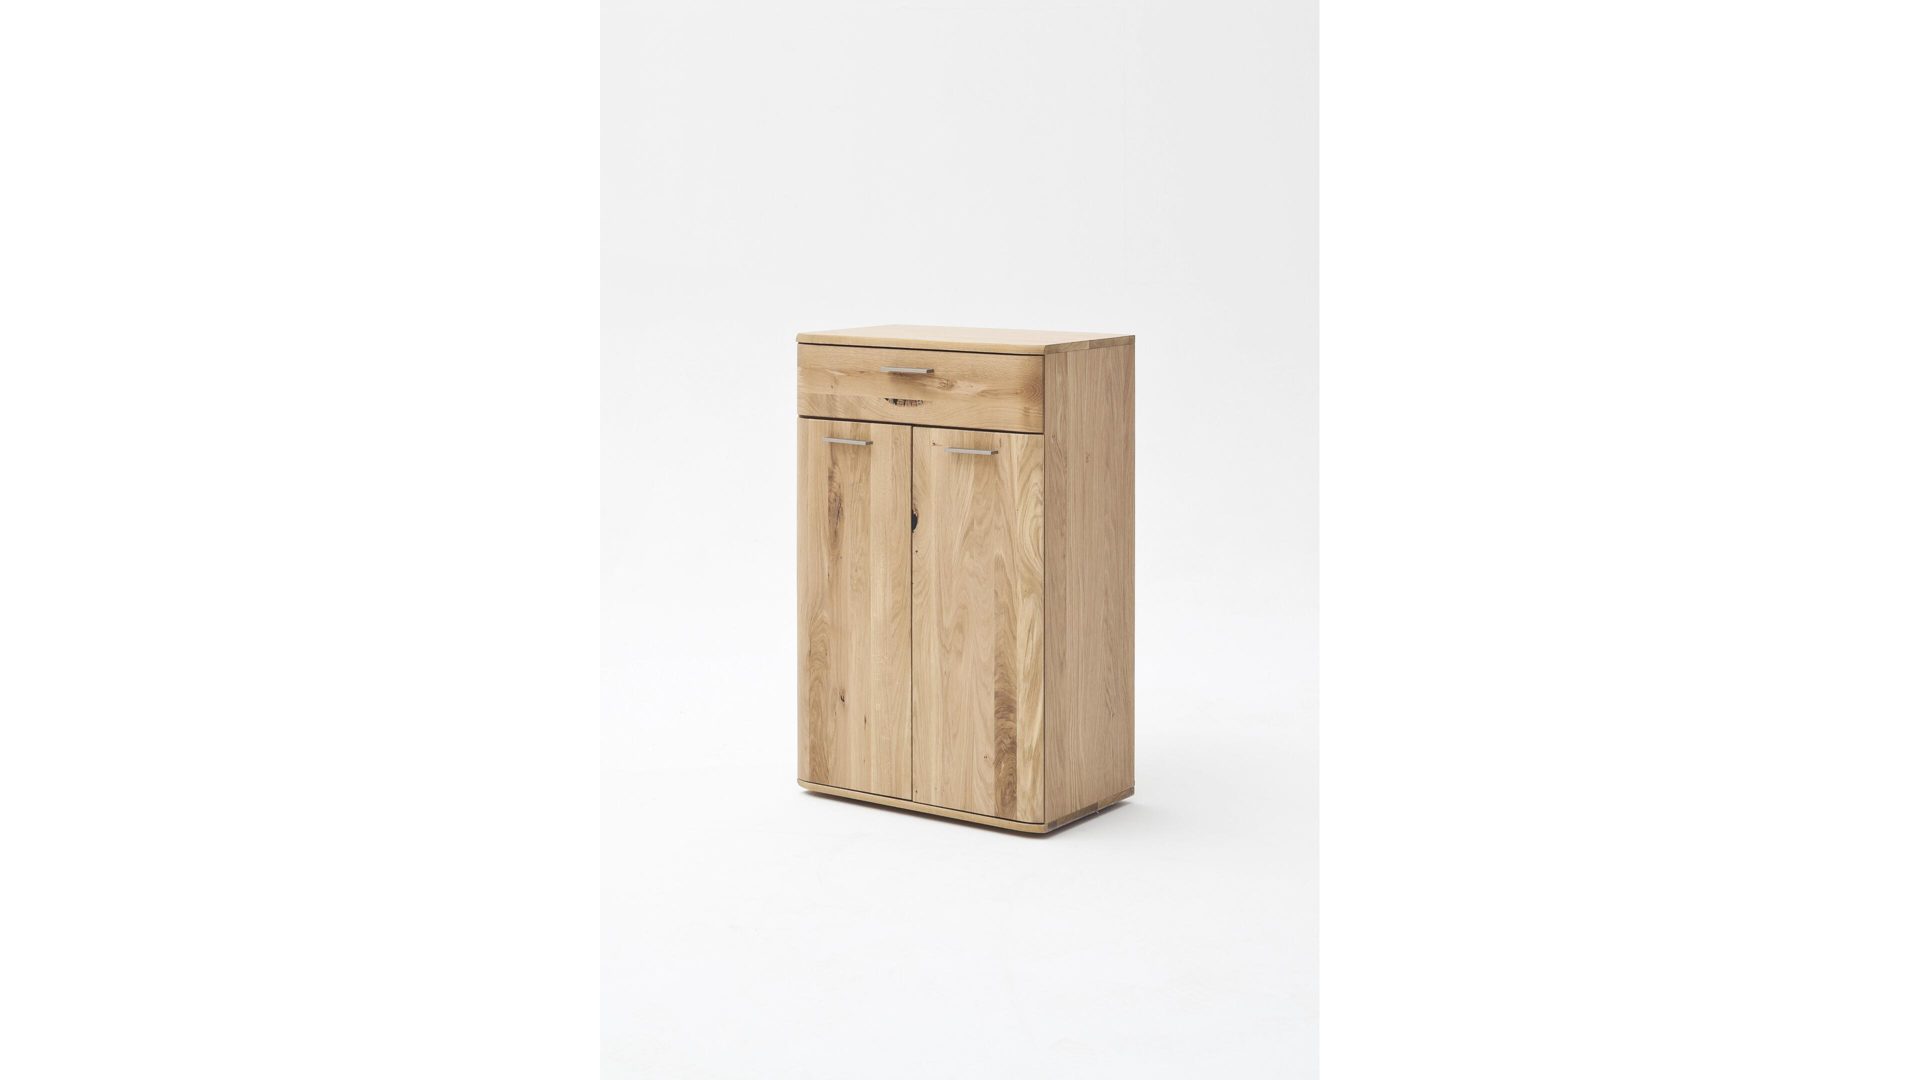 Kombikommode Mca furniture aus Holz in Holzfarben Kombikommode biancofarbene Balkeneiche – zwei Türen, eine Schublade